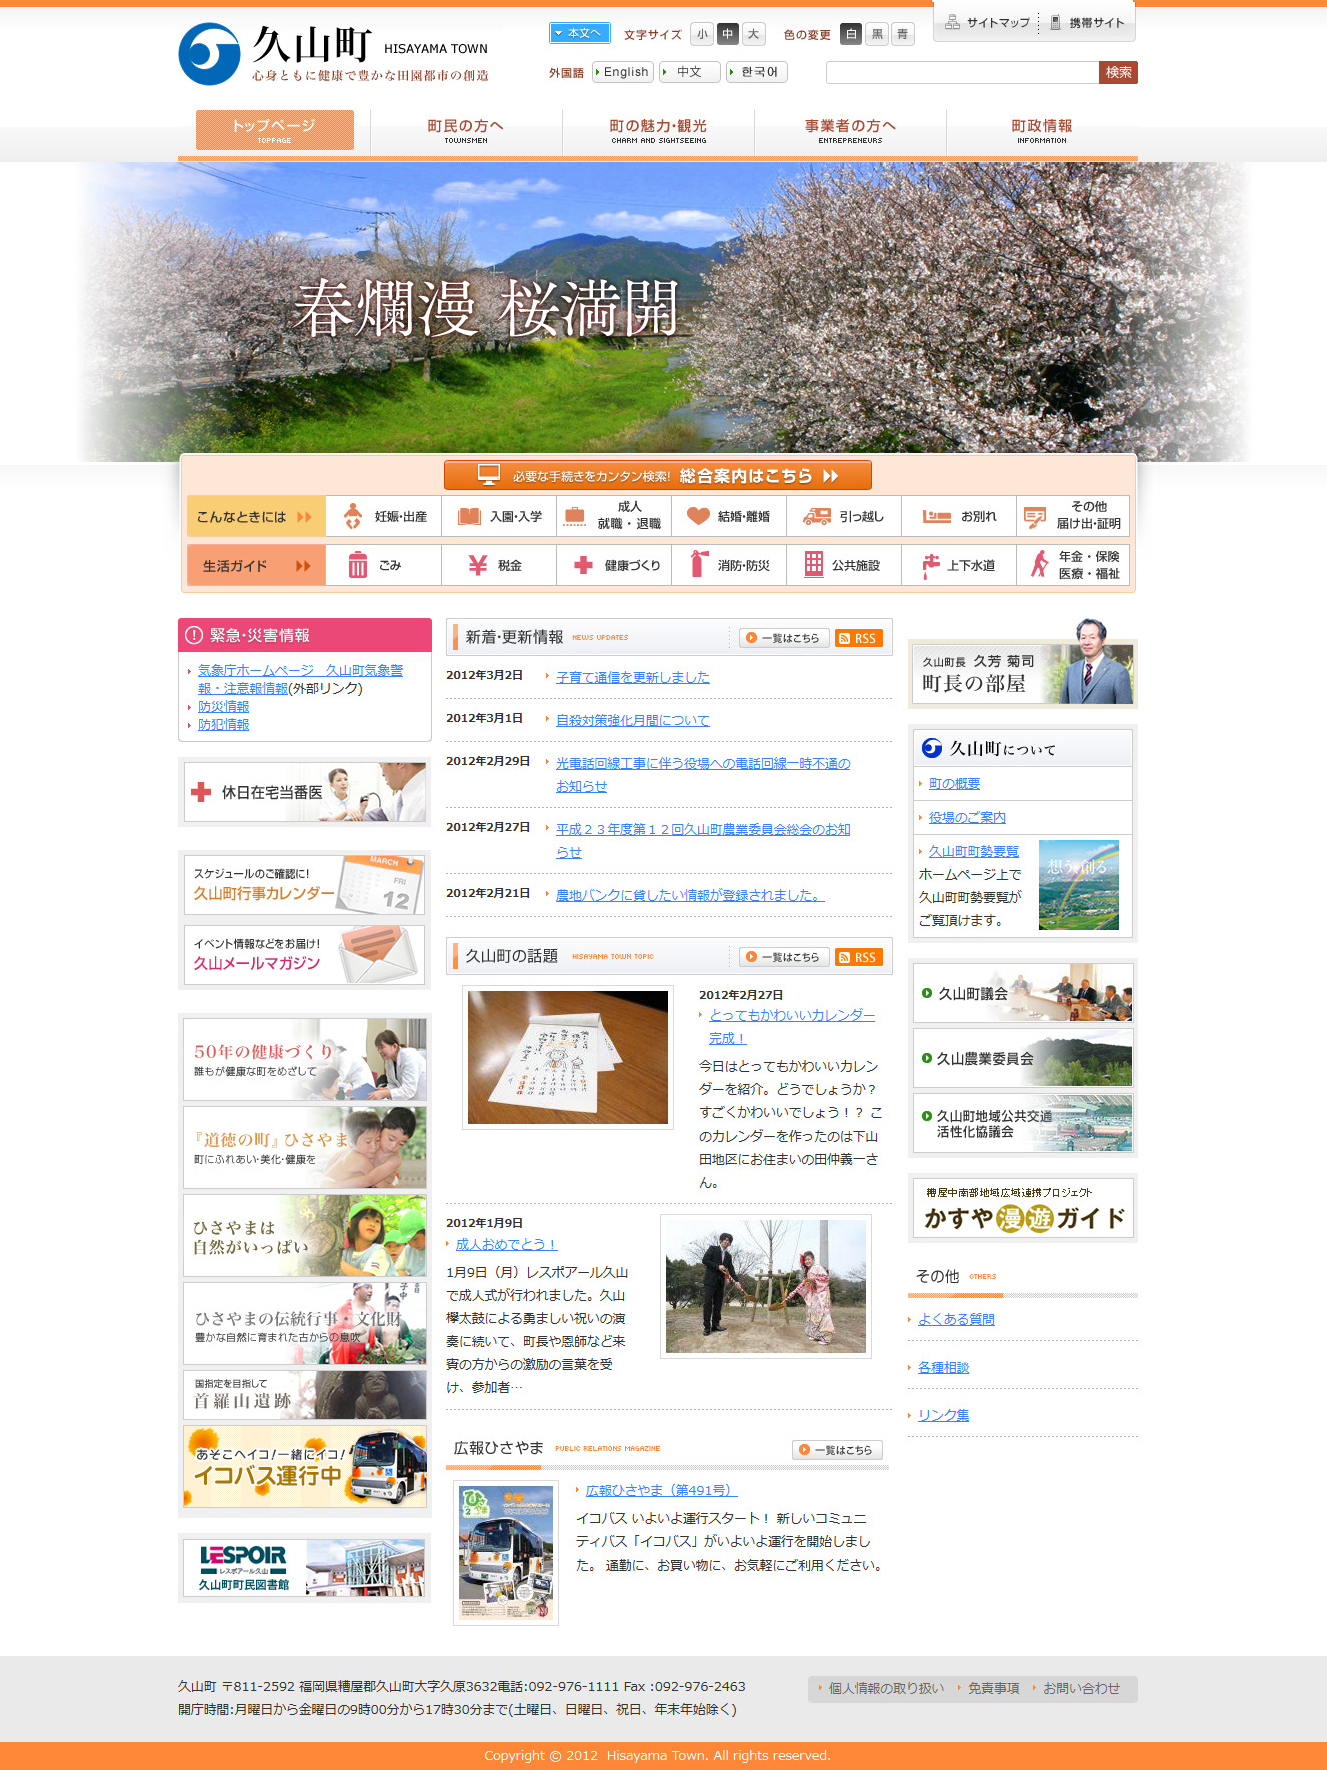 久山町ホームページトップの写真